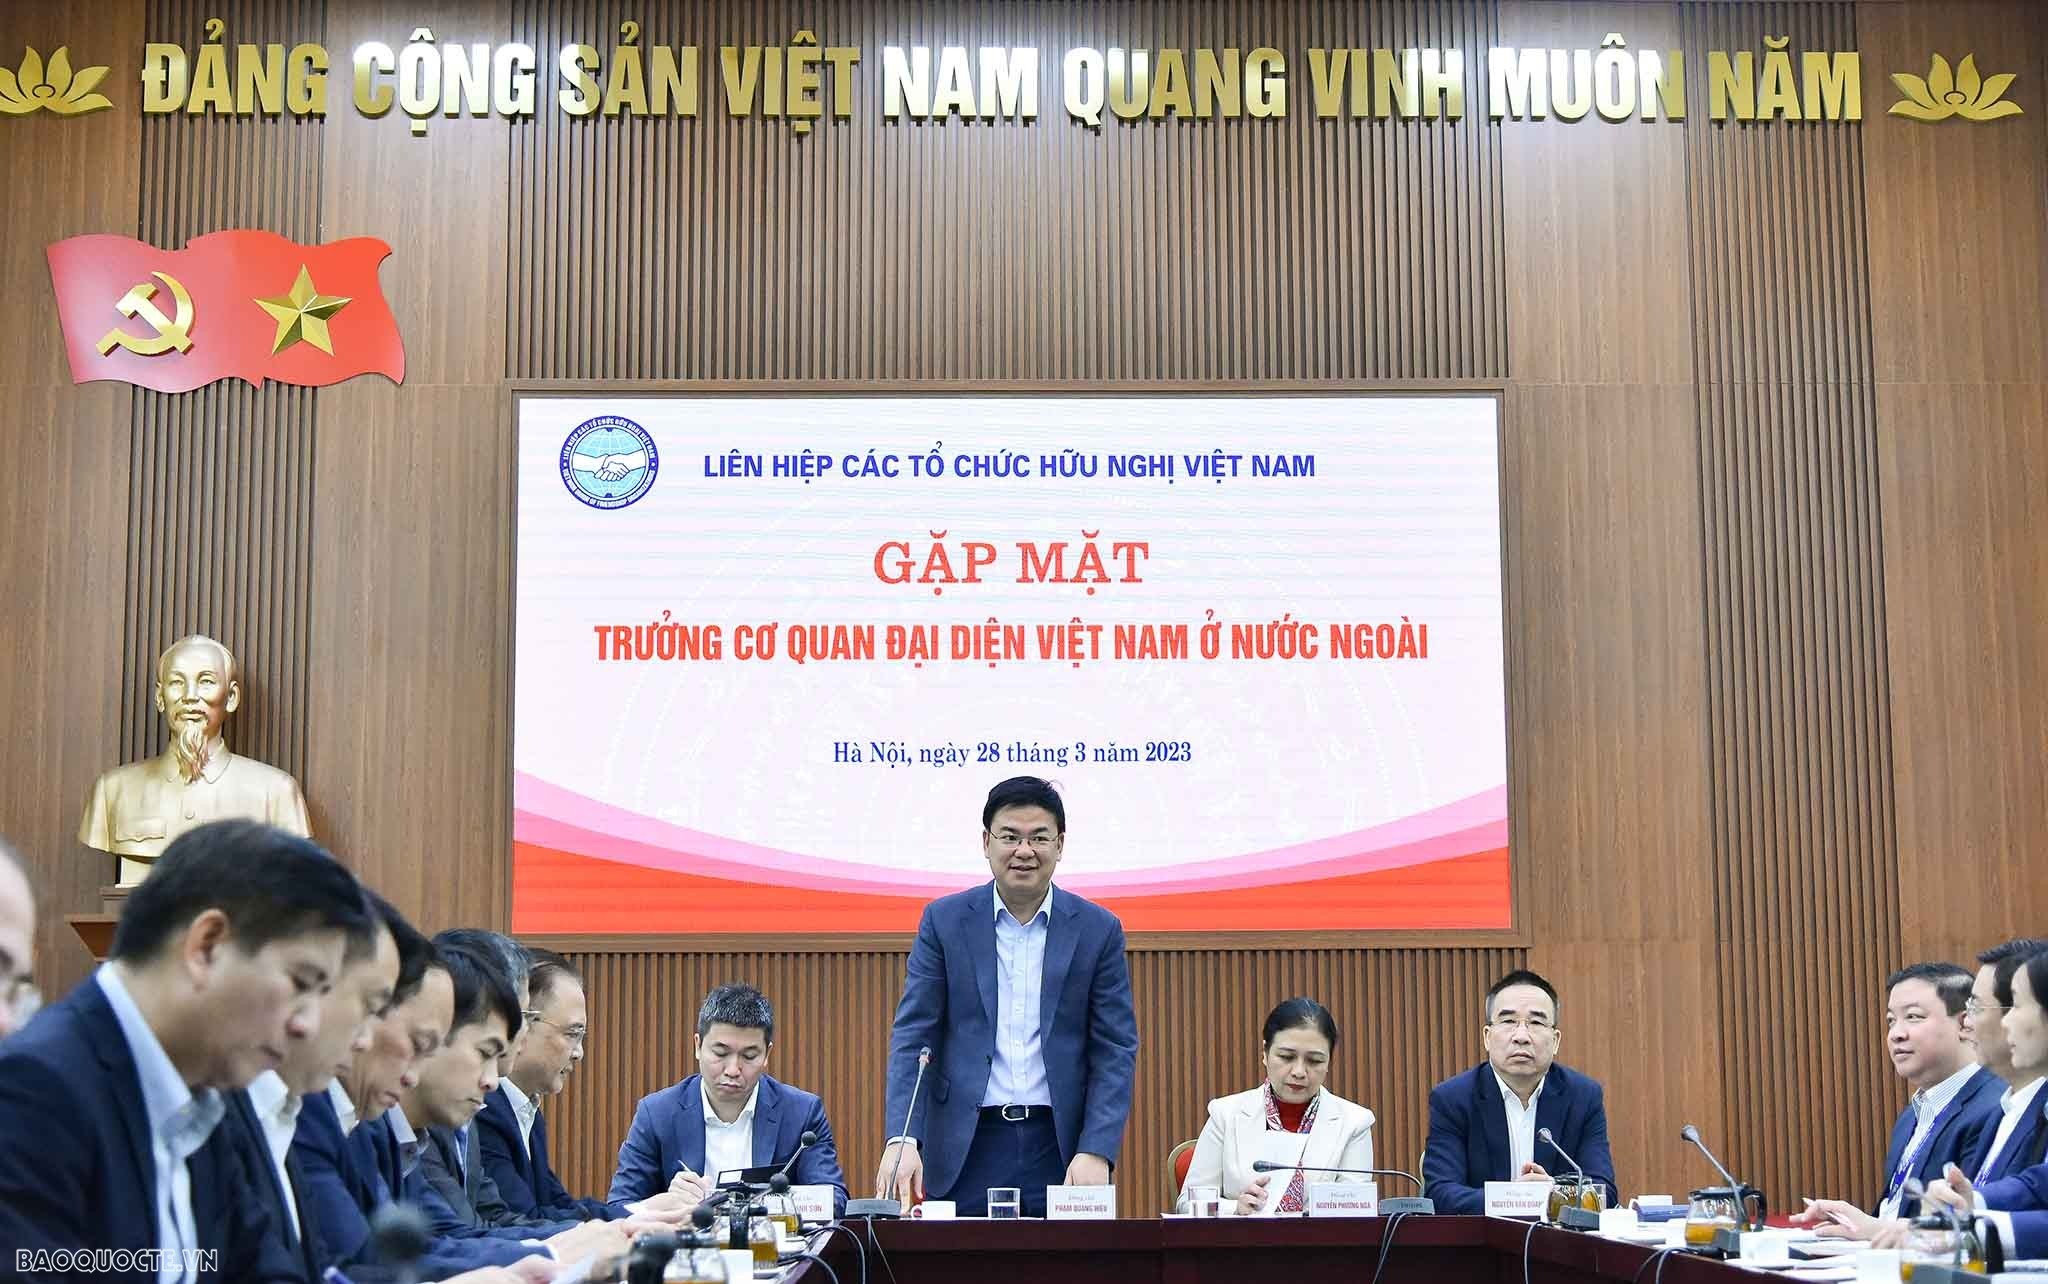 thay mặt đoàn các Đại sứ, Trưởng Cơ quan đại diện Việt Nam ở nước ngoài, Thứ trưởng Bộ Ngoại giao Phạm Quang Hiệu cảm ơn lãnh đạo Liên hiệp các tổ chức hữu nghị Việt Nam đã dành thời gian tiếp đoàn.